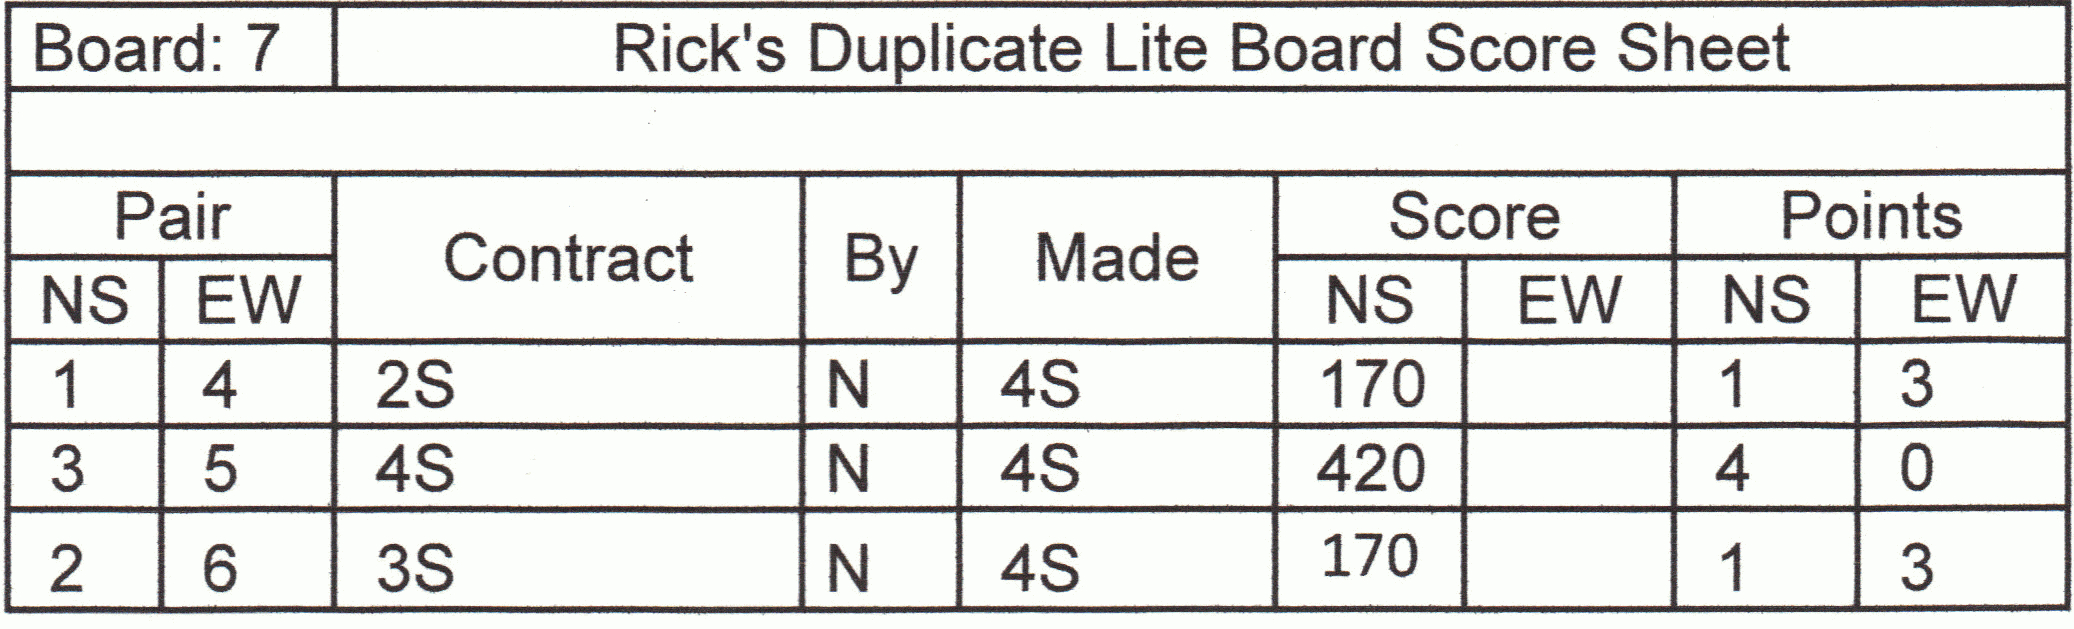 Duplicate Bridge Scoring Spreadsheet Inside Scoring In Duplicate Bridge